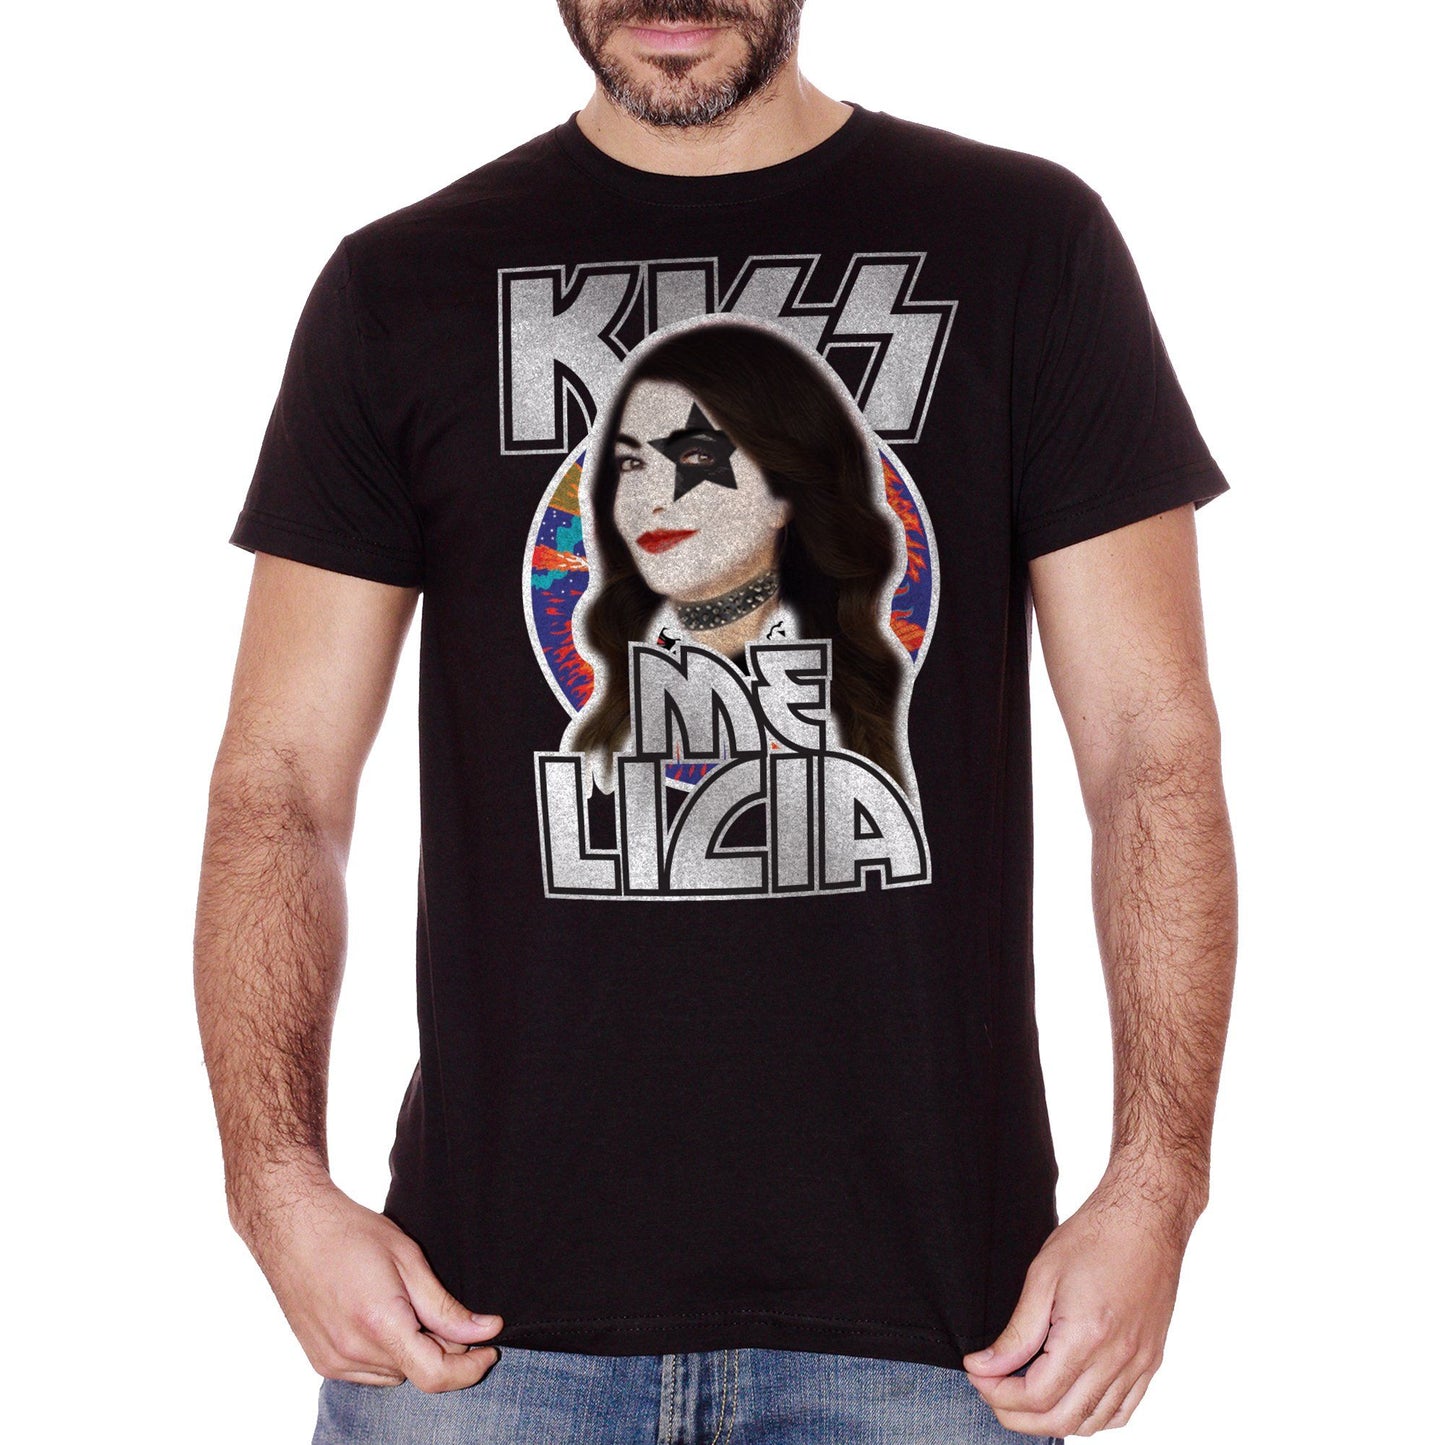 Black T-Shirt KISS me Licia cartoon rock cristina d'avena divertente - MUSIC CucShop